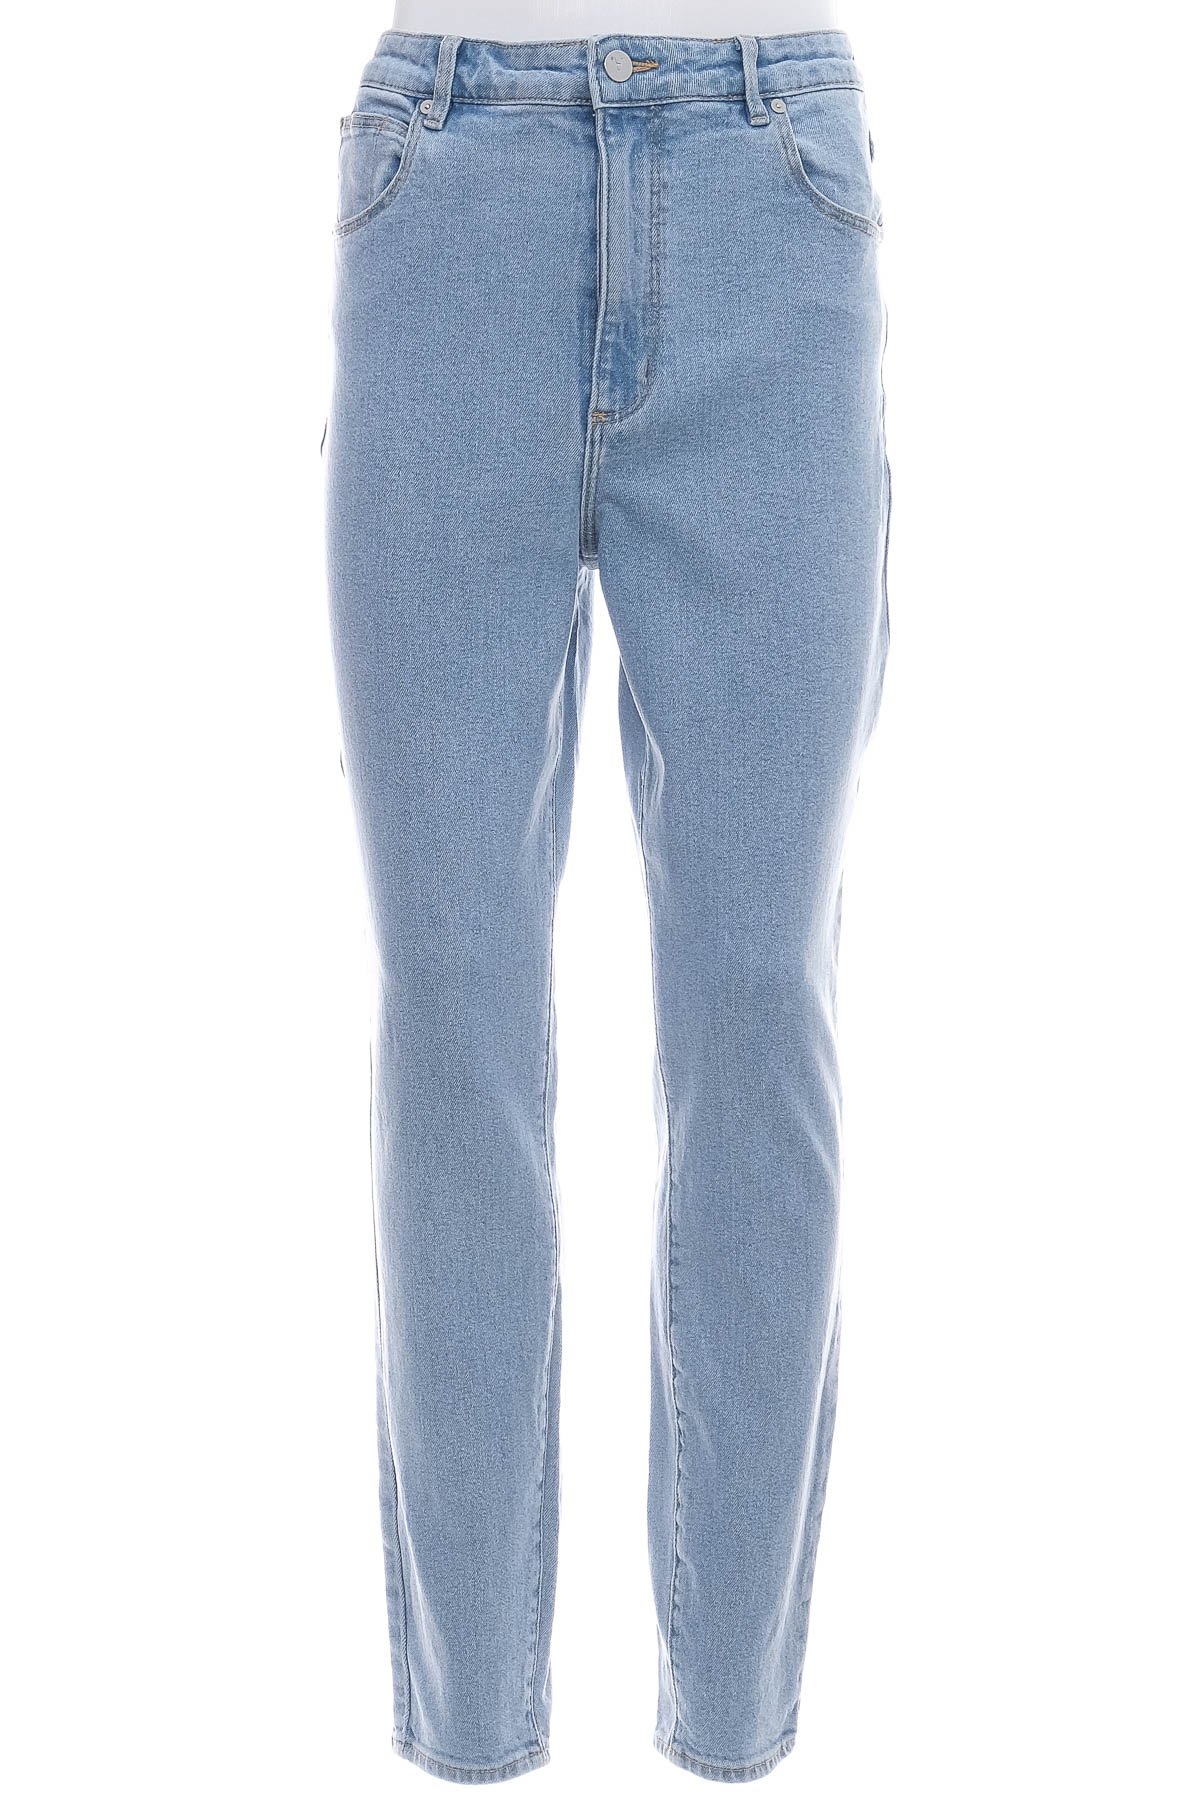 Men's jeans - Abrand Jeans - 0